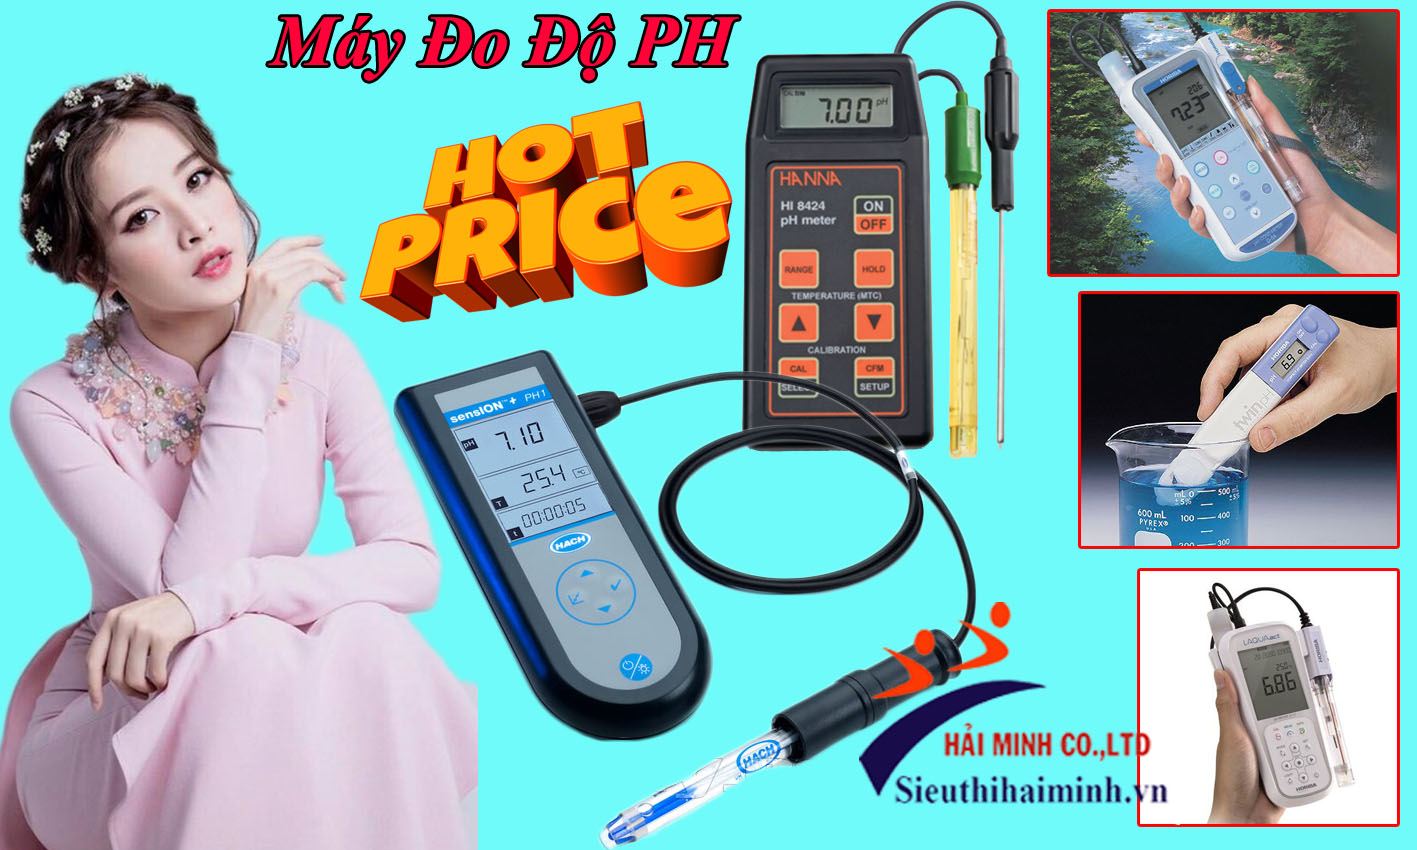 Địa chỉ cung cấp máy đo độ pH uy tín giá rẻ tại Hà Nội